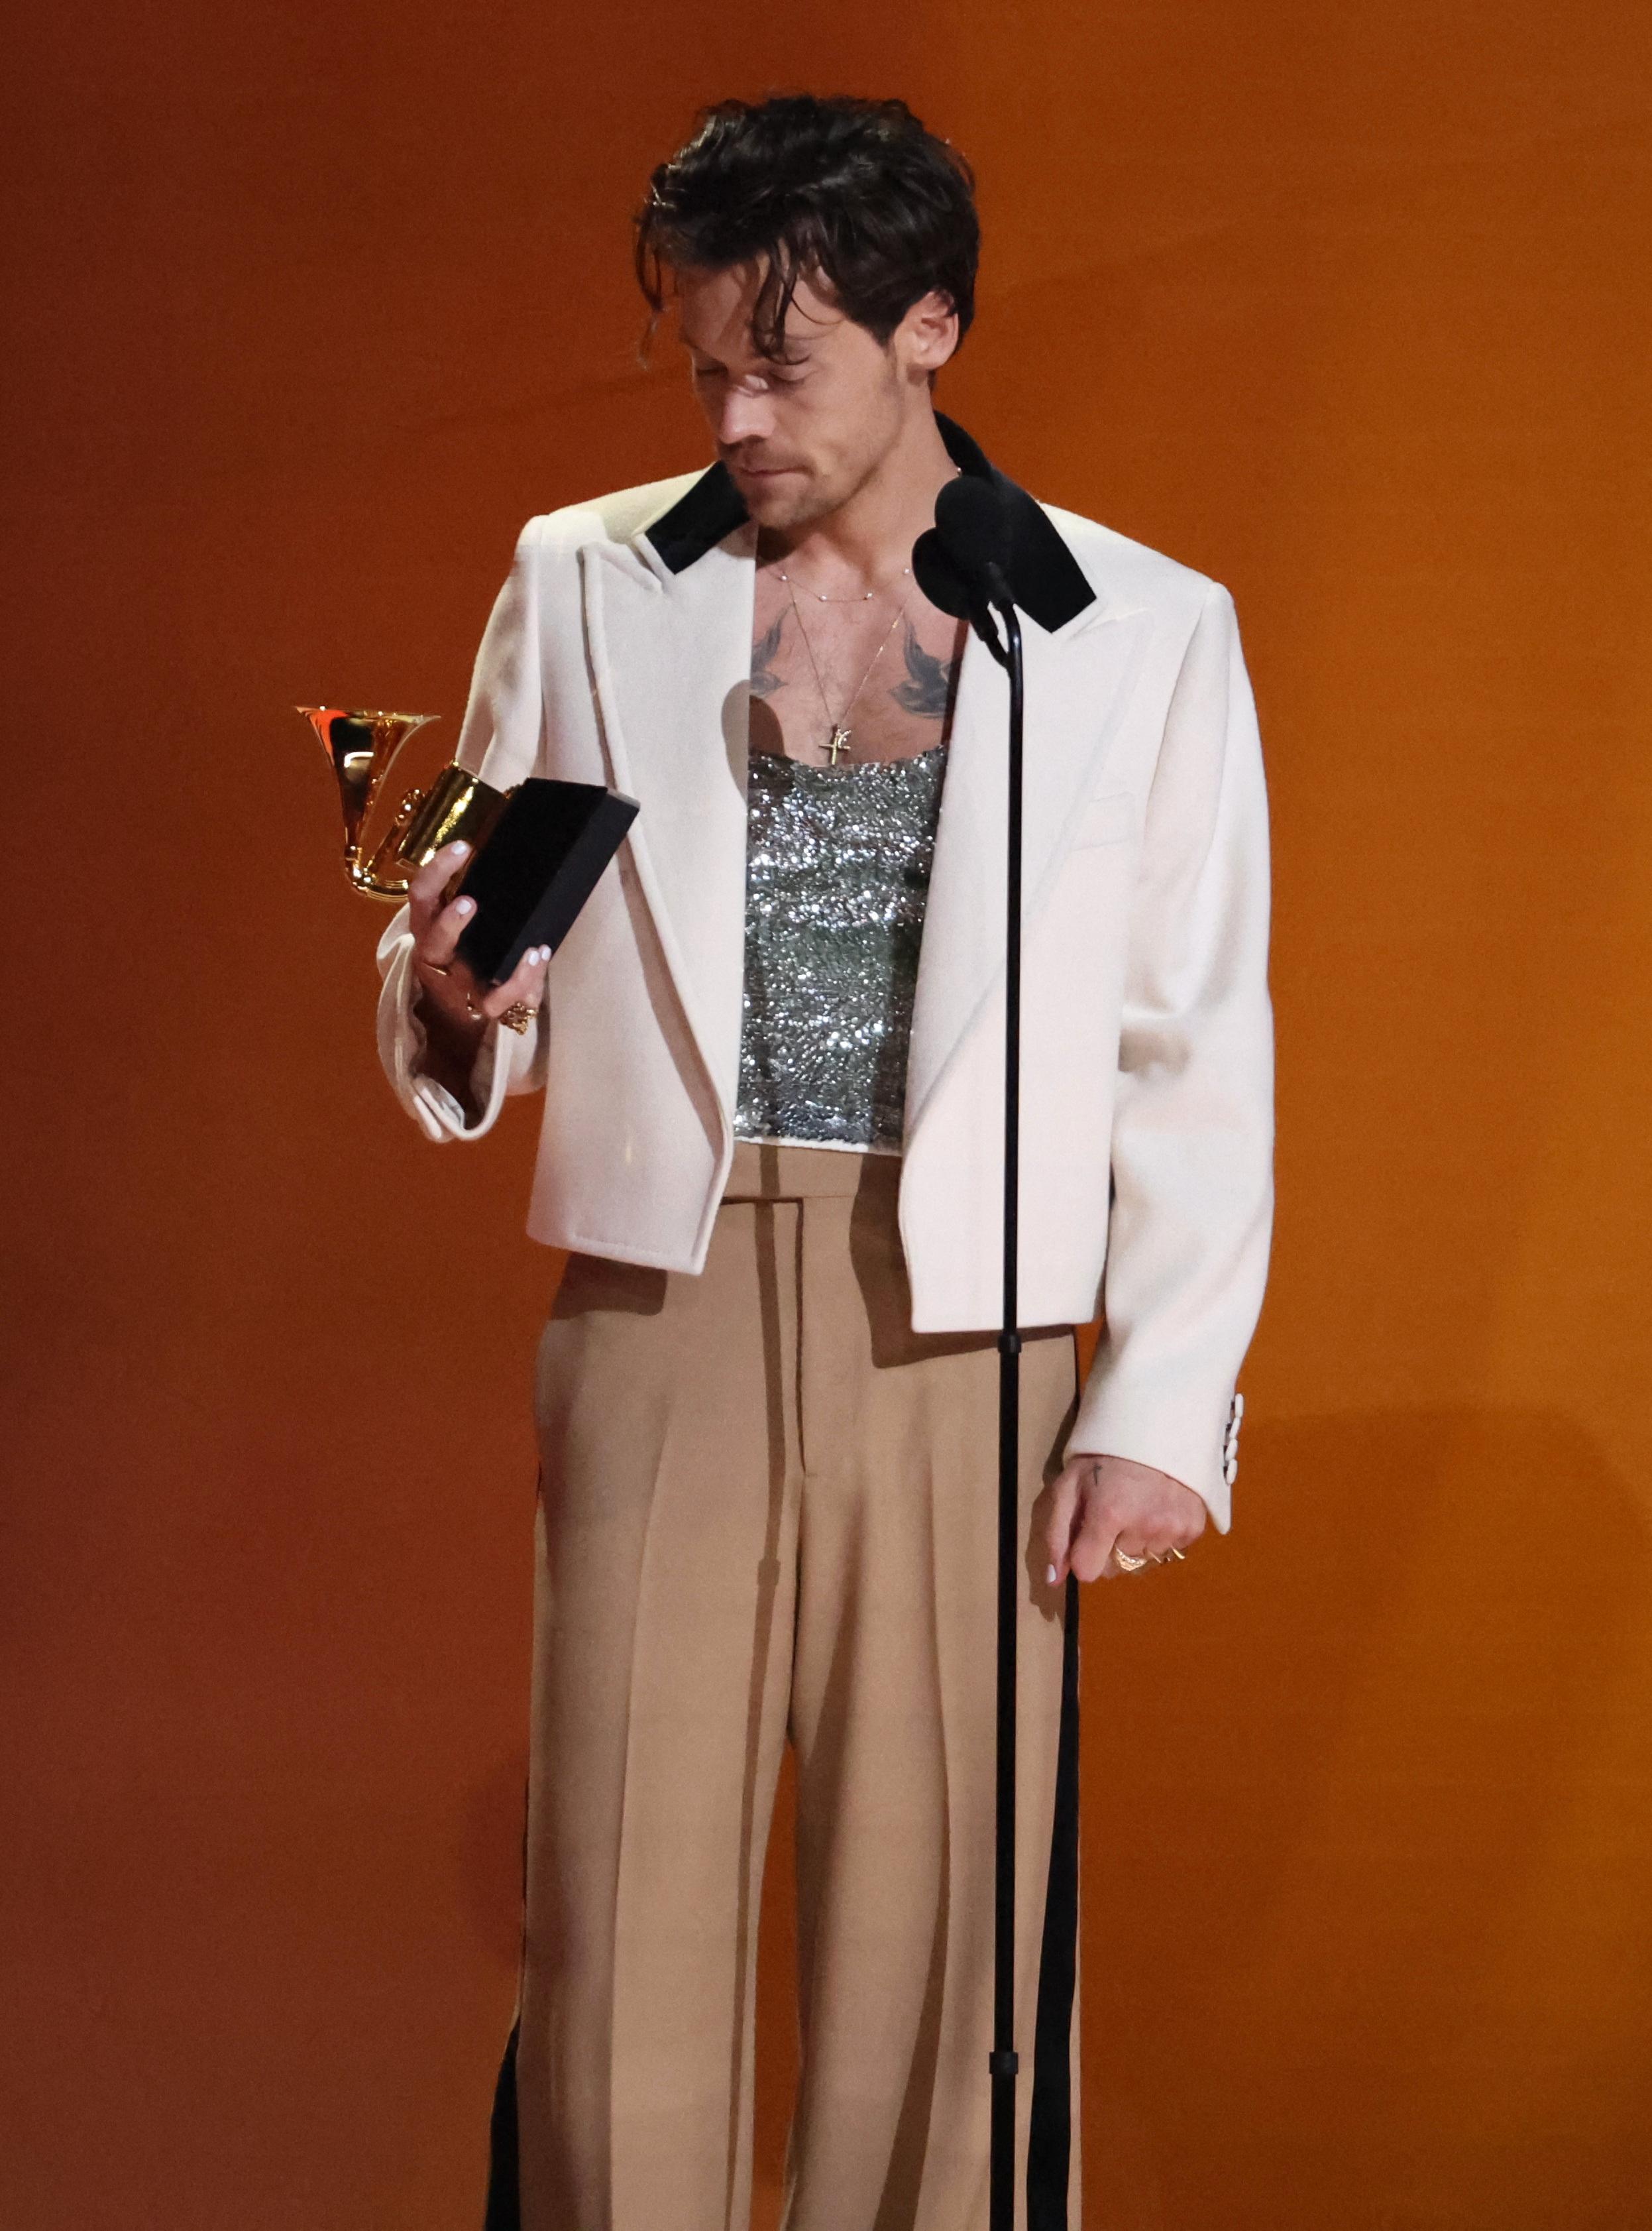 Harry Styles mottar prisen «Album of the Year» iført en glitrende topp, brun bukse og en jakke i svart og hvitt.